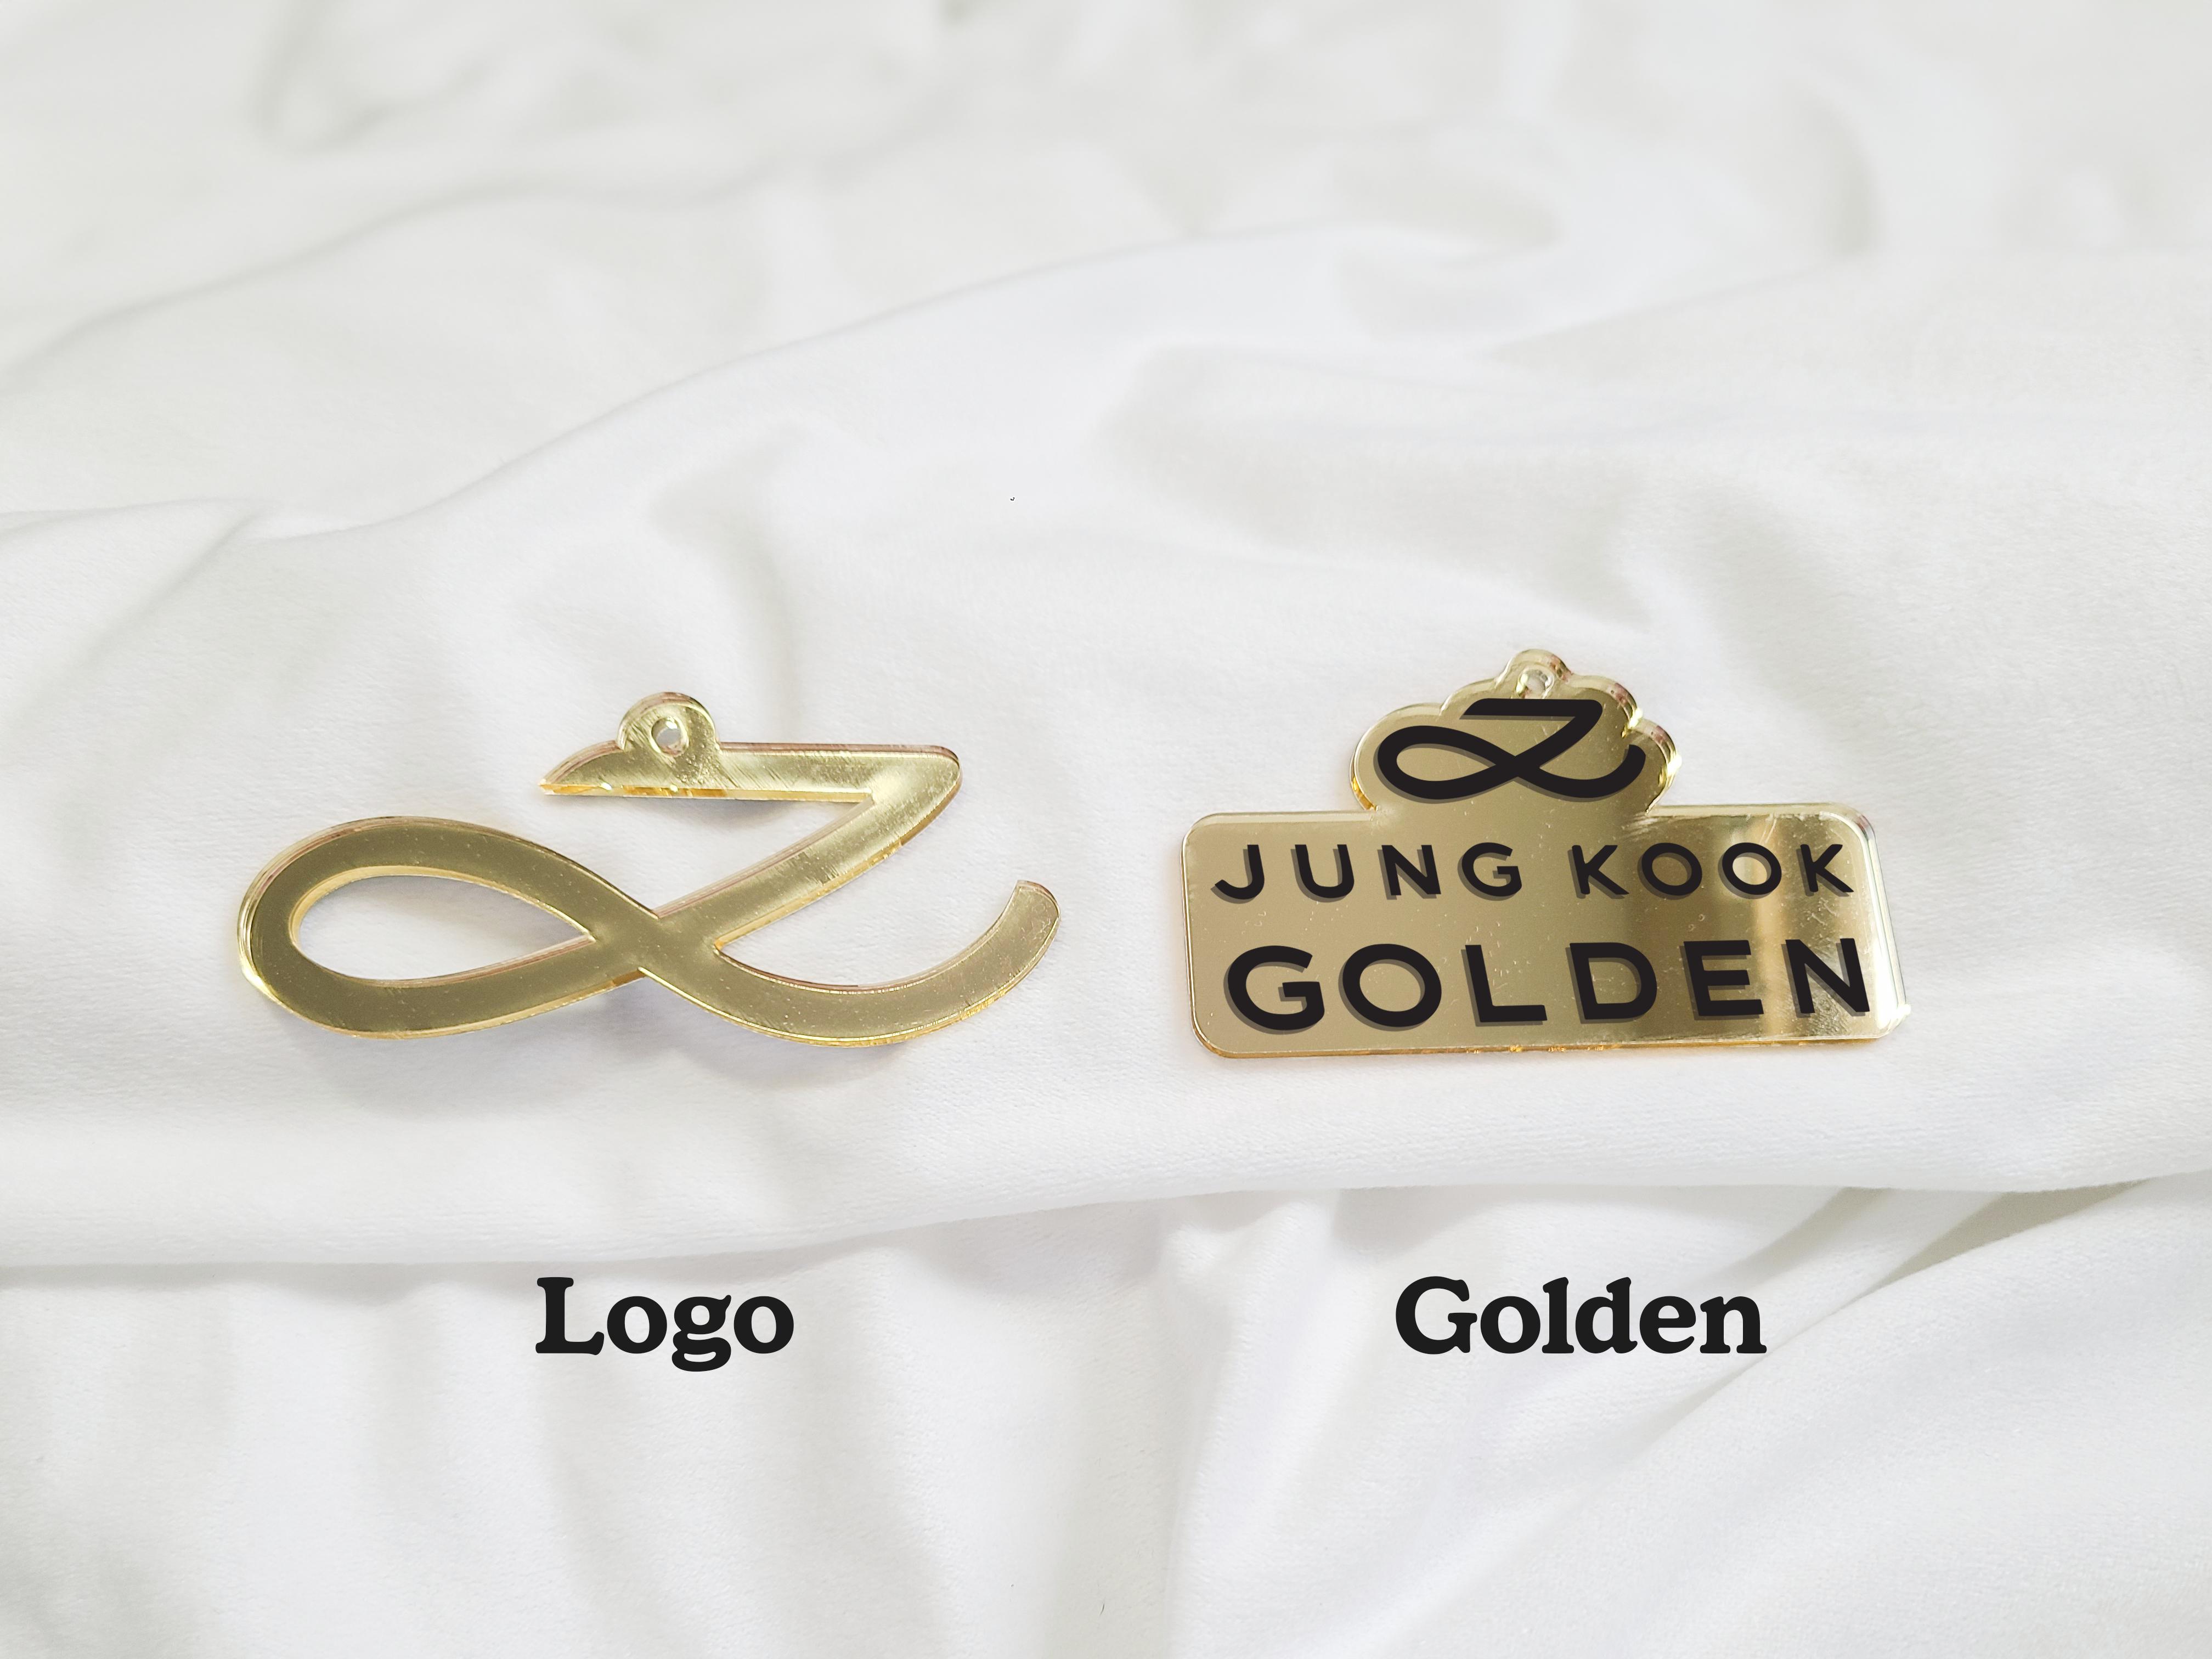 Jungkook Golden Ornaments